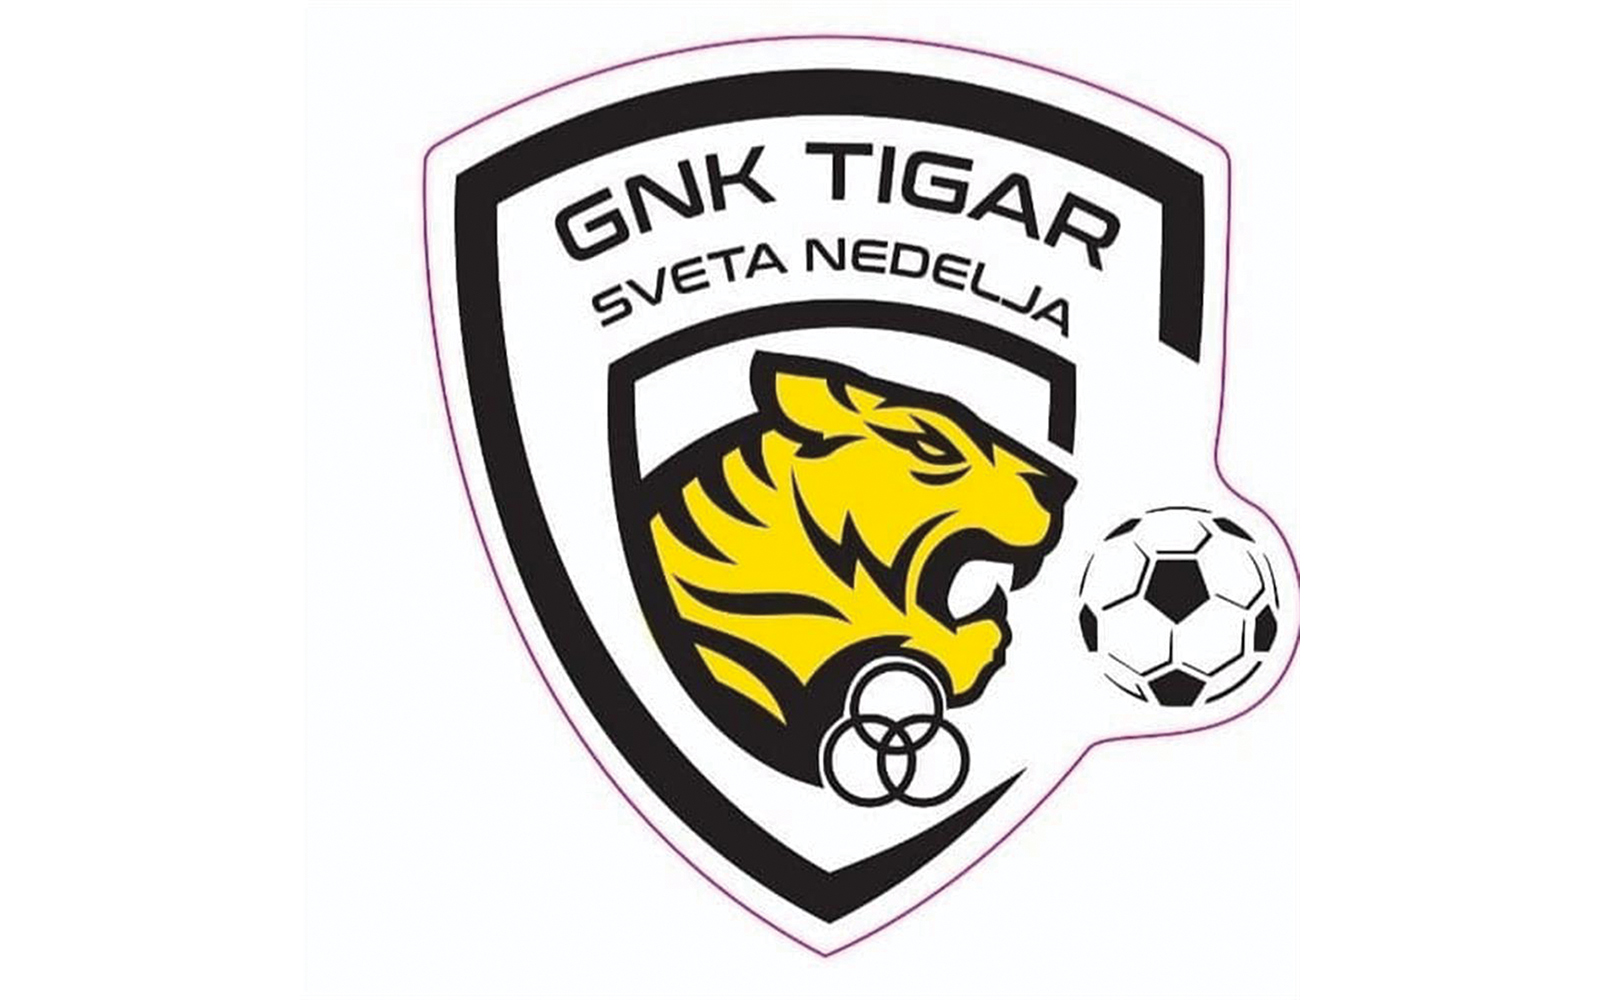 4. NL sredite Zagreb  B - 21. kolo
TOP  Tigar Sveta Nedelja 0:2 (0:1)